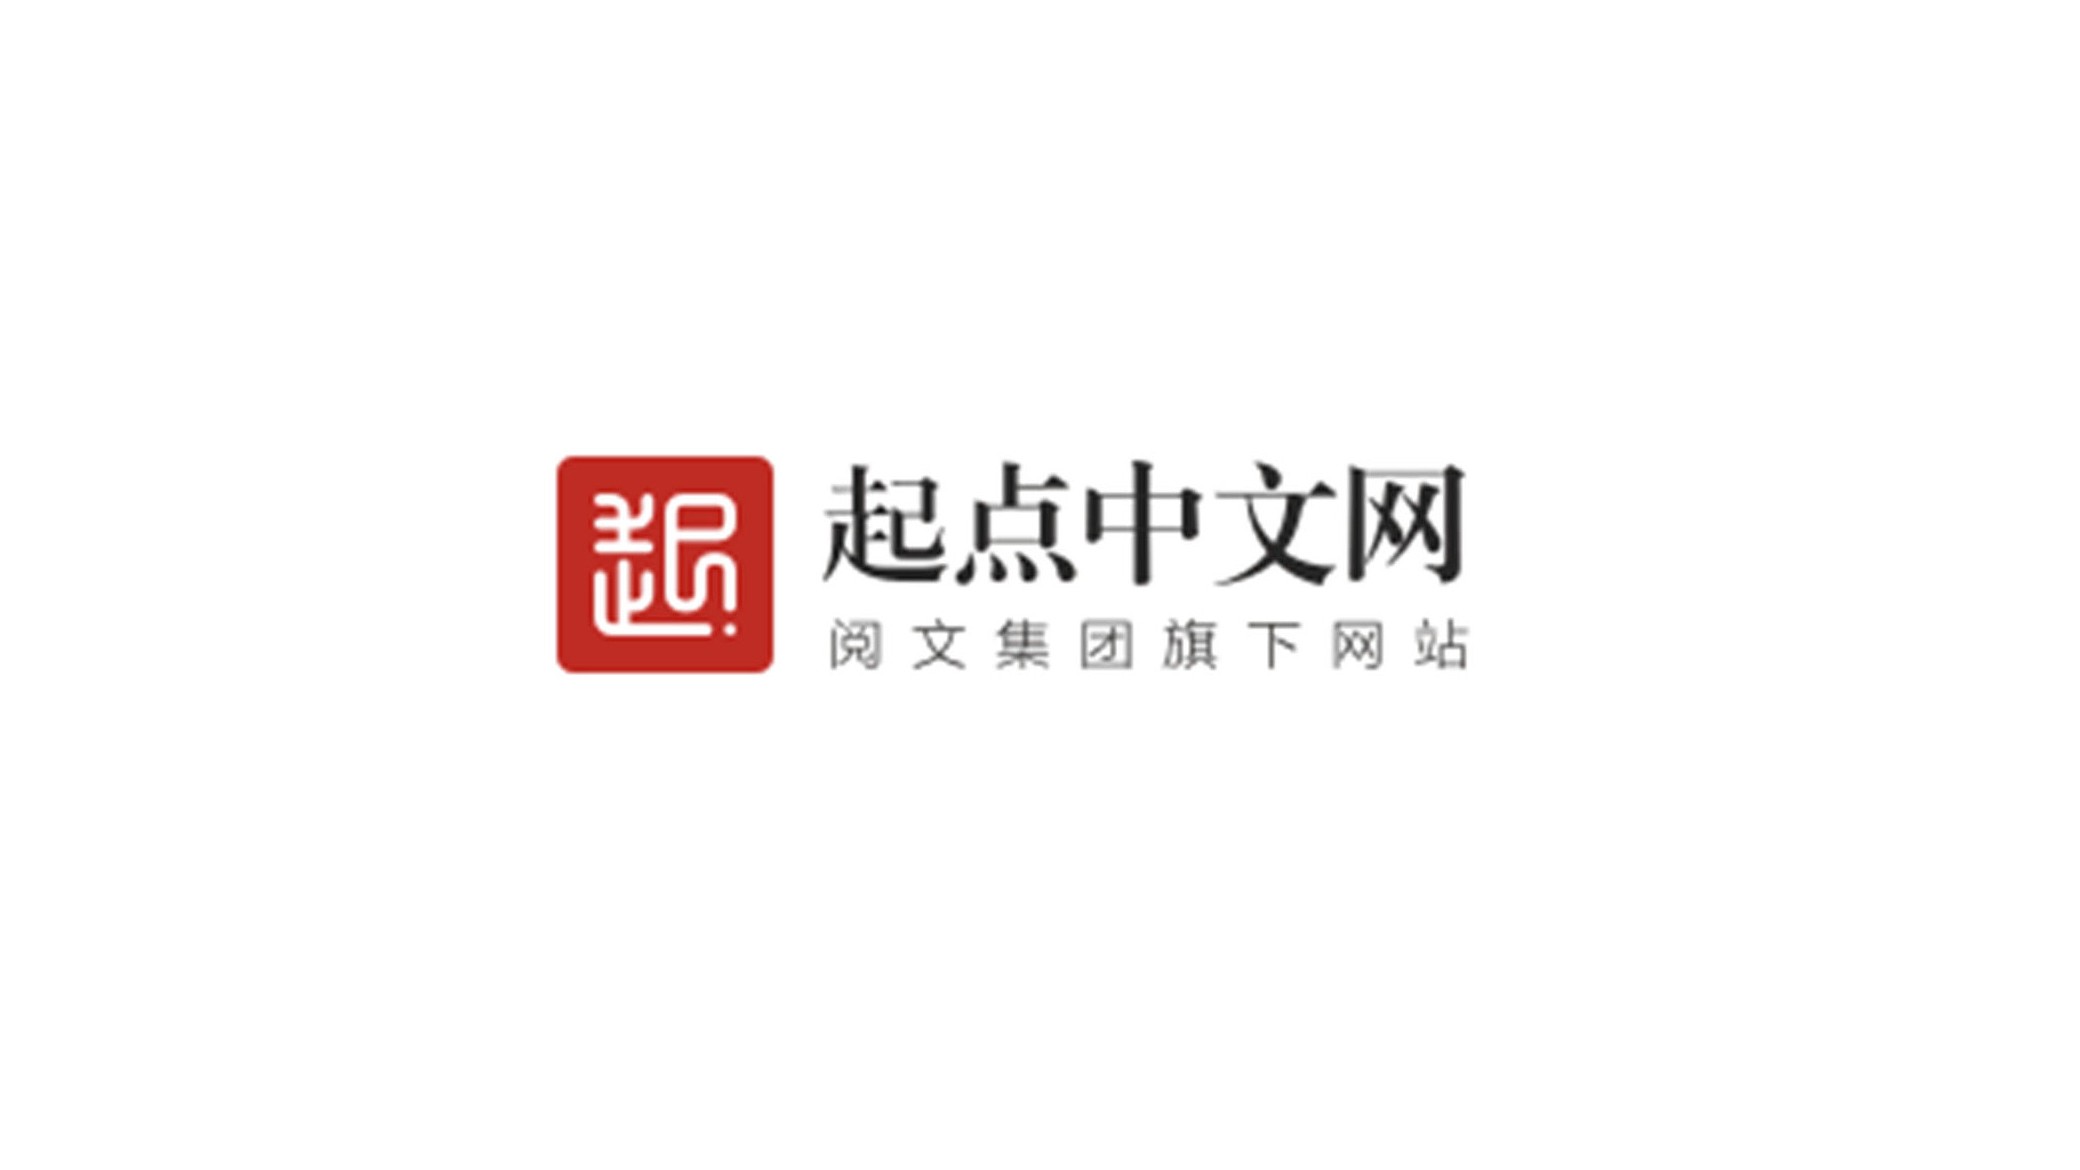 起点中文网logo图片含义/演变/变迁及品牌介绍 - logo